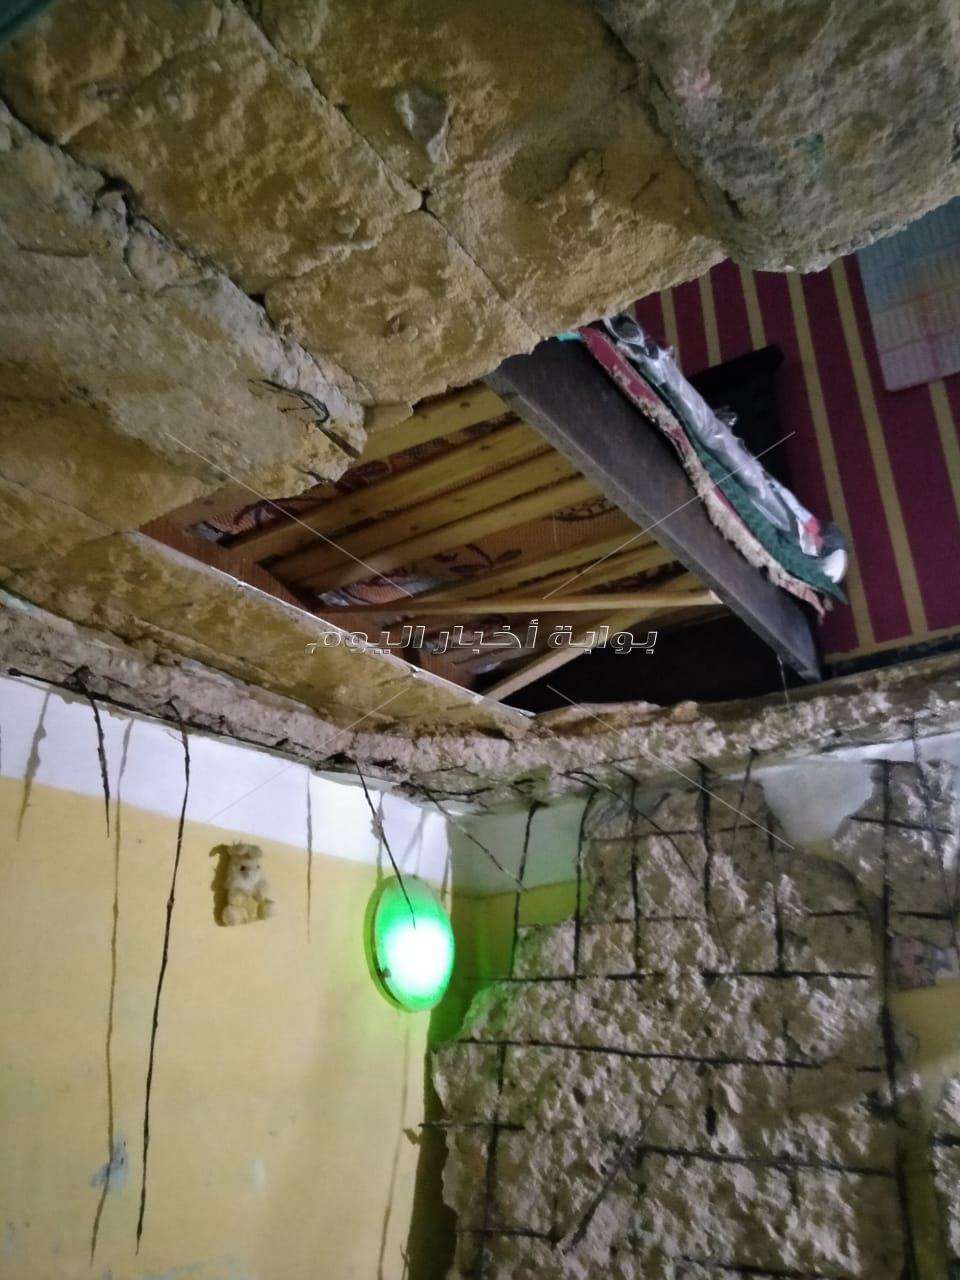 إصابة 3 أشخاص في انهيار سقف عقار بمنطقة الدخيلة بالإسكندرية 